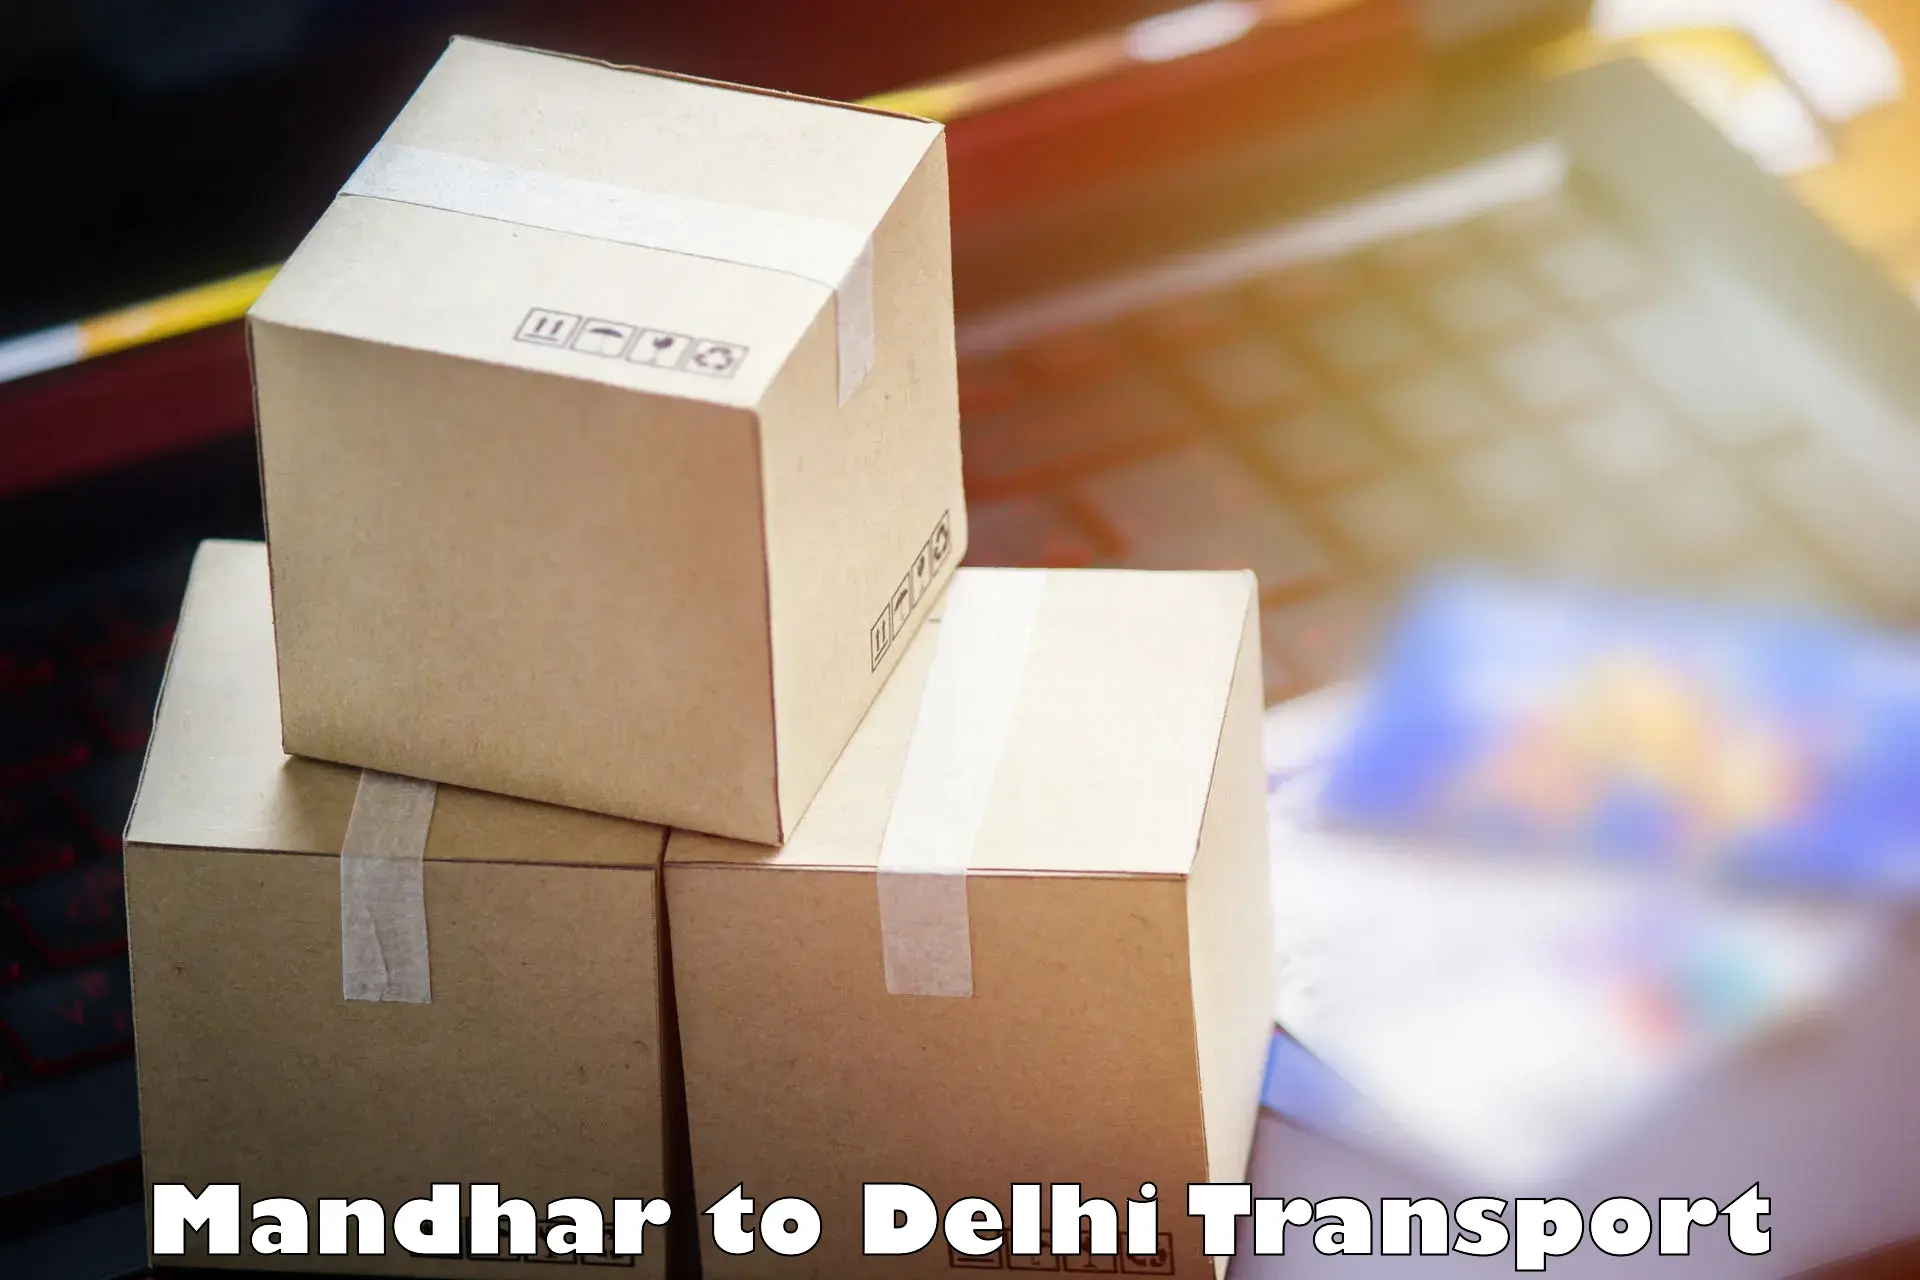 Transport shared services Mandhar to East Delhi